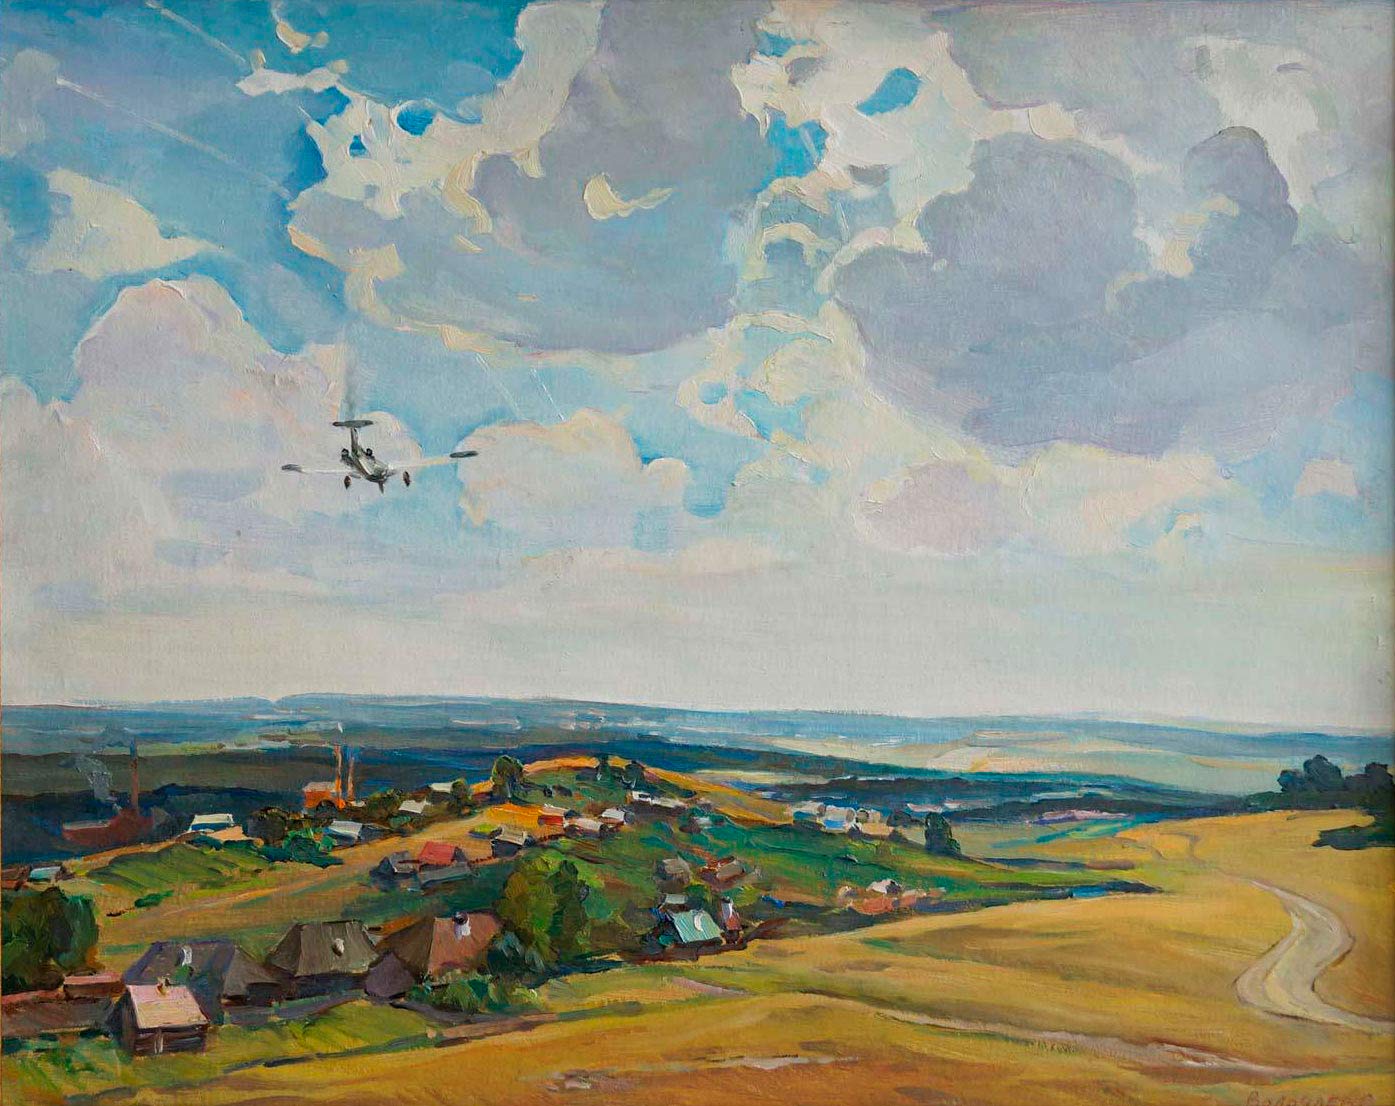 Above Isetsk, Sergei Volochaev, Buy the painting Oil